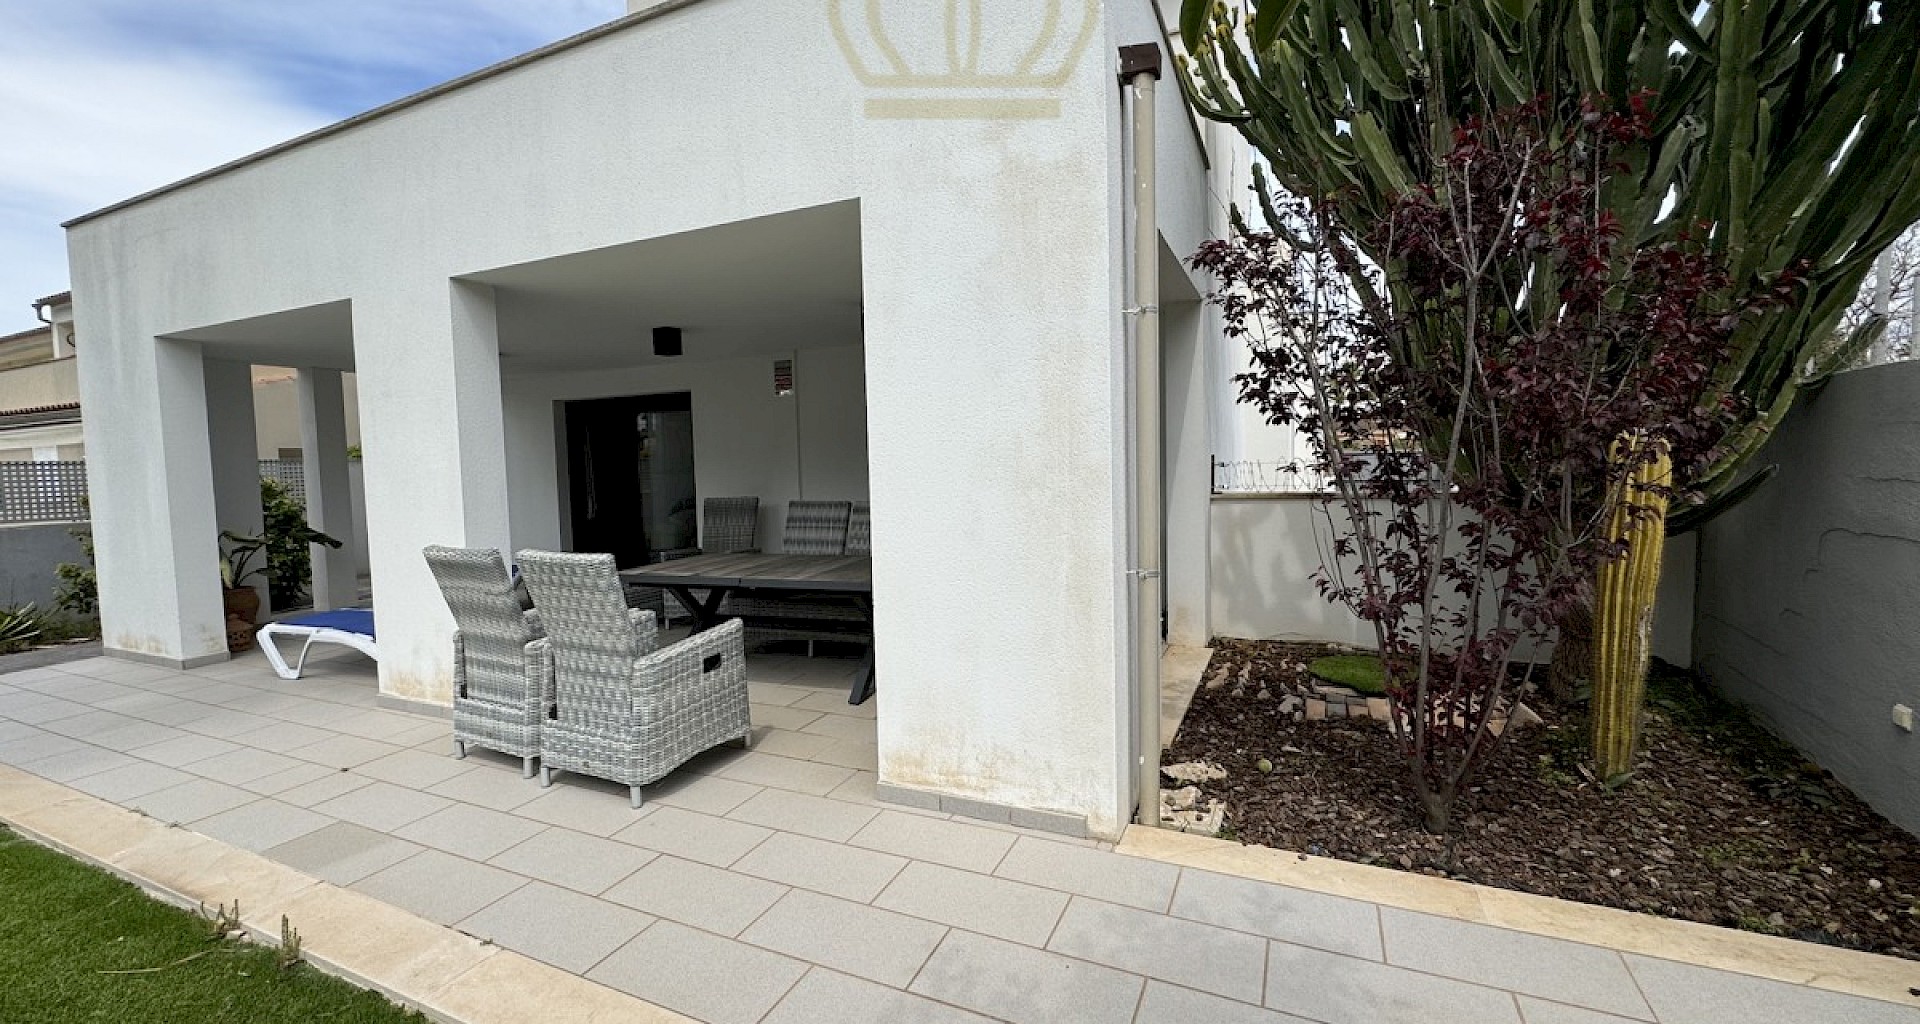 KROHN & LUEDEMANN Maison moderne à acheter à Can Pastilla près de Palma 